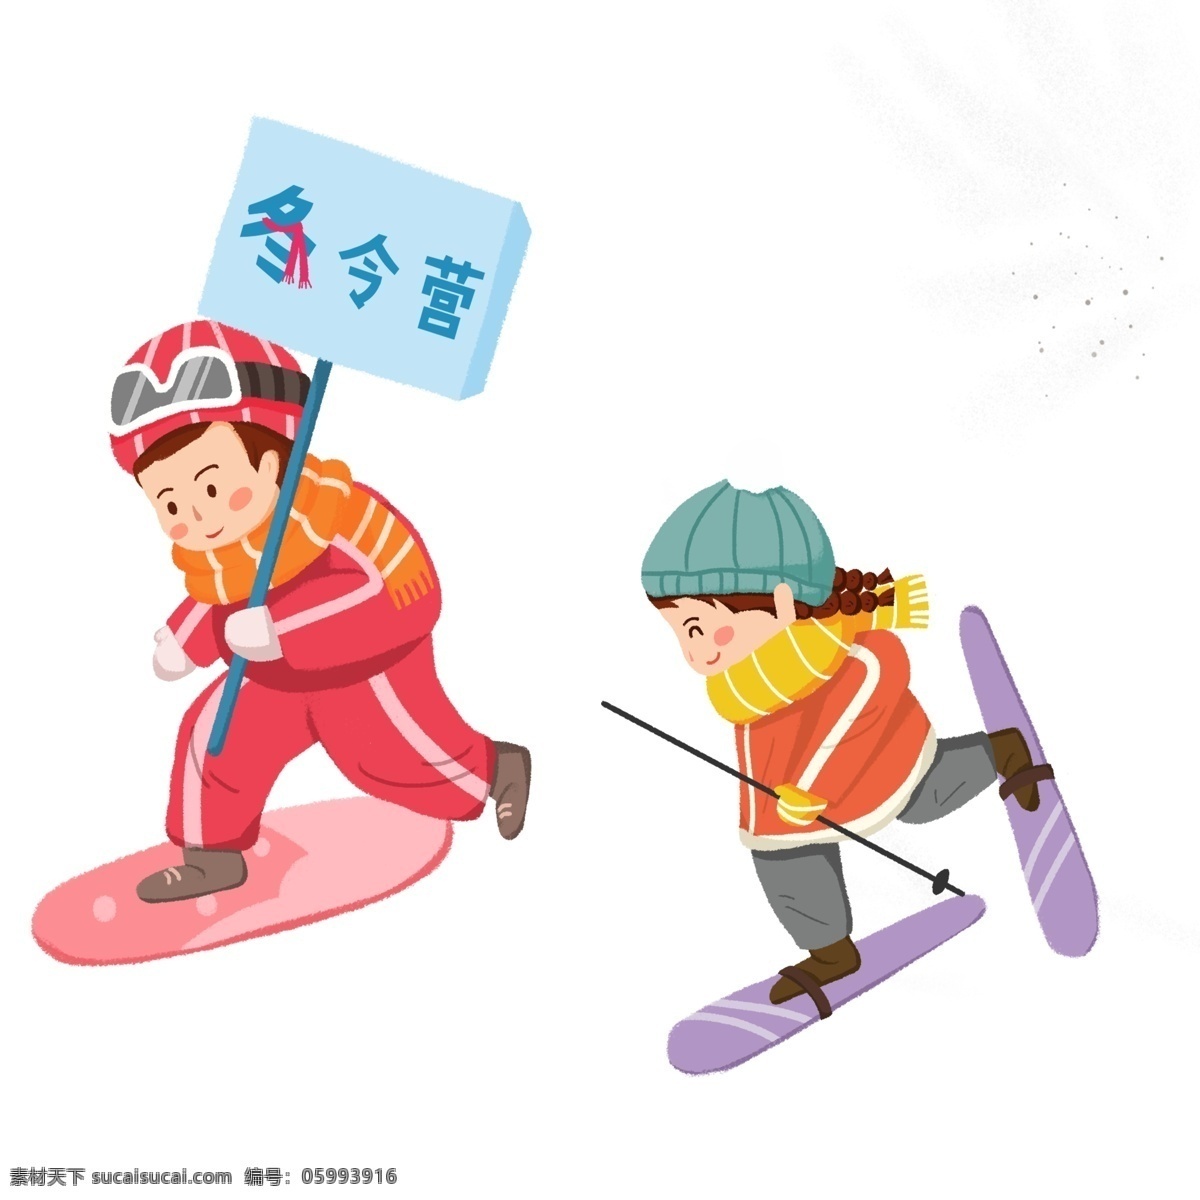 卡通 男孩 女孩 滑冰 免 抠 图 滑雪 工具 卡通图案 卡通插画 卡通人物 动漫人物 免抠图